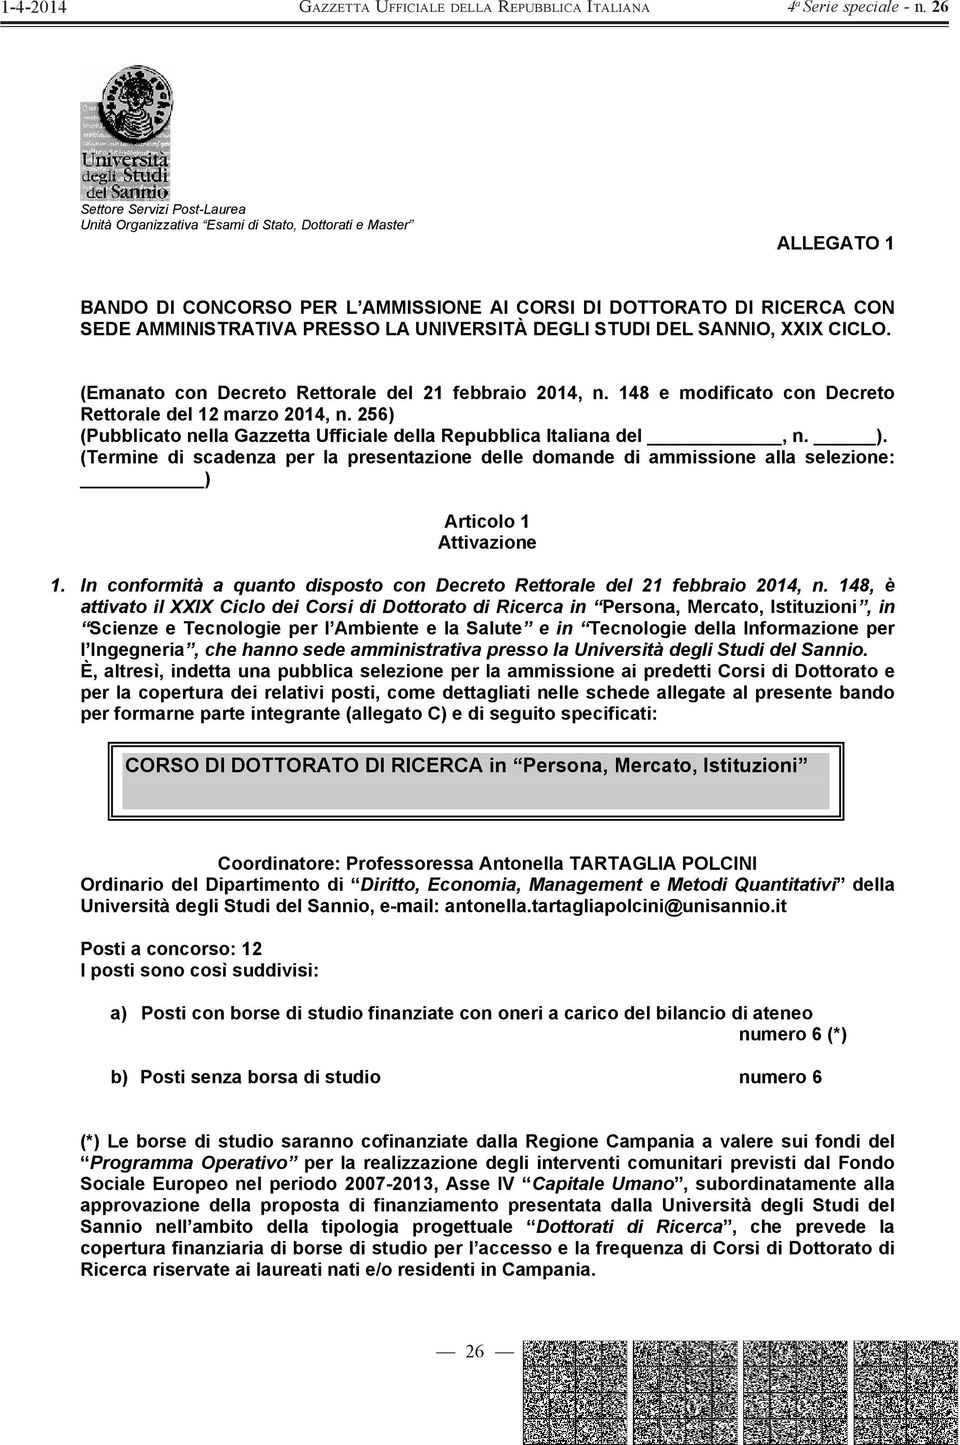 256) (Pubblicato nella Gazzetta Ufficiale della Repubblica Italiana del, n. ). (Termine di scadenza per la presentazione delle domande di ammissione alla selezione: ) Articolo 1 Attivazione 1.